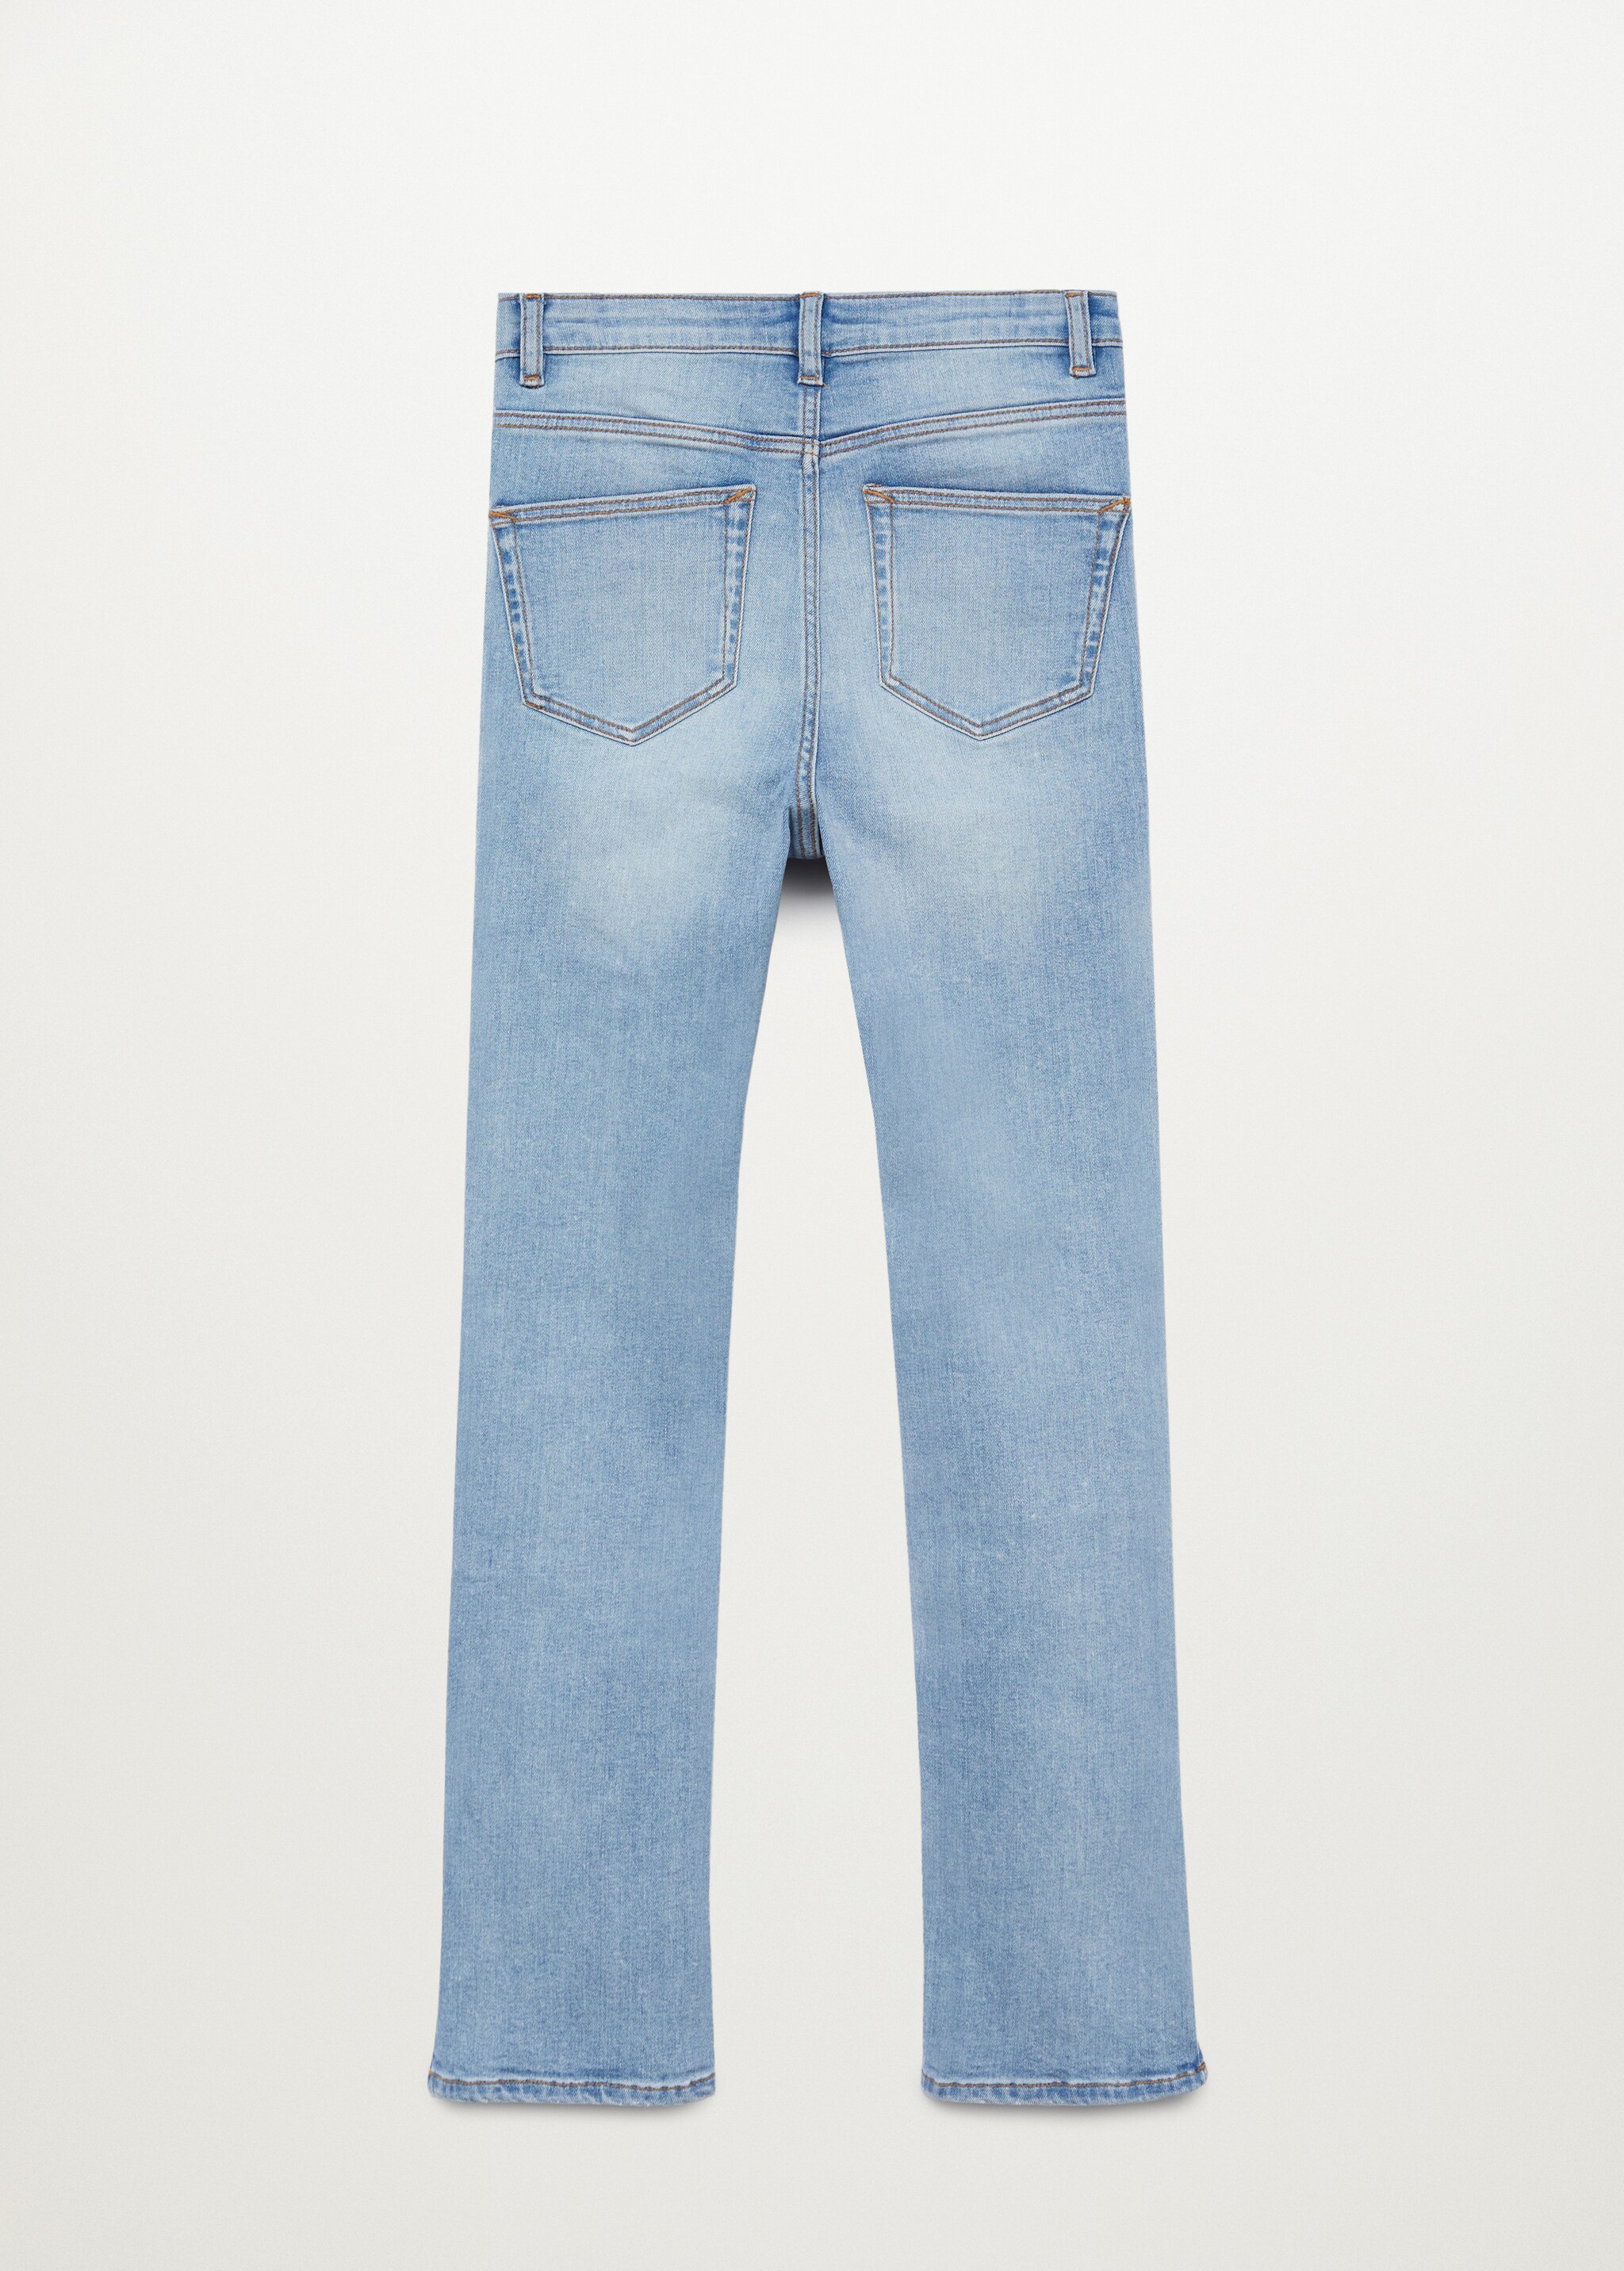 Medium Washed Jeans mit Seitenschlitzen  - Rückseite des Artikels